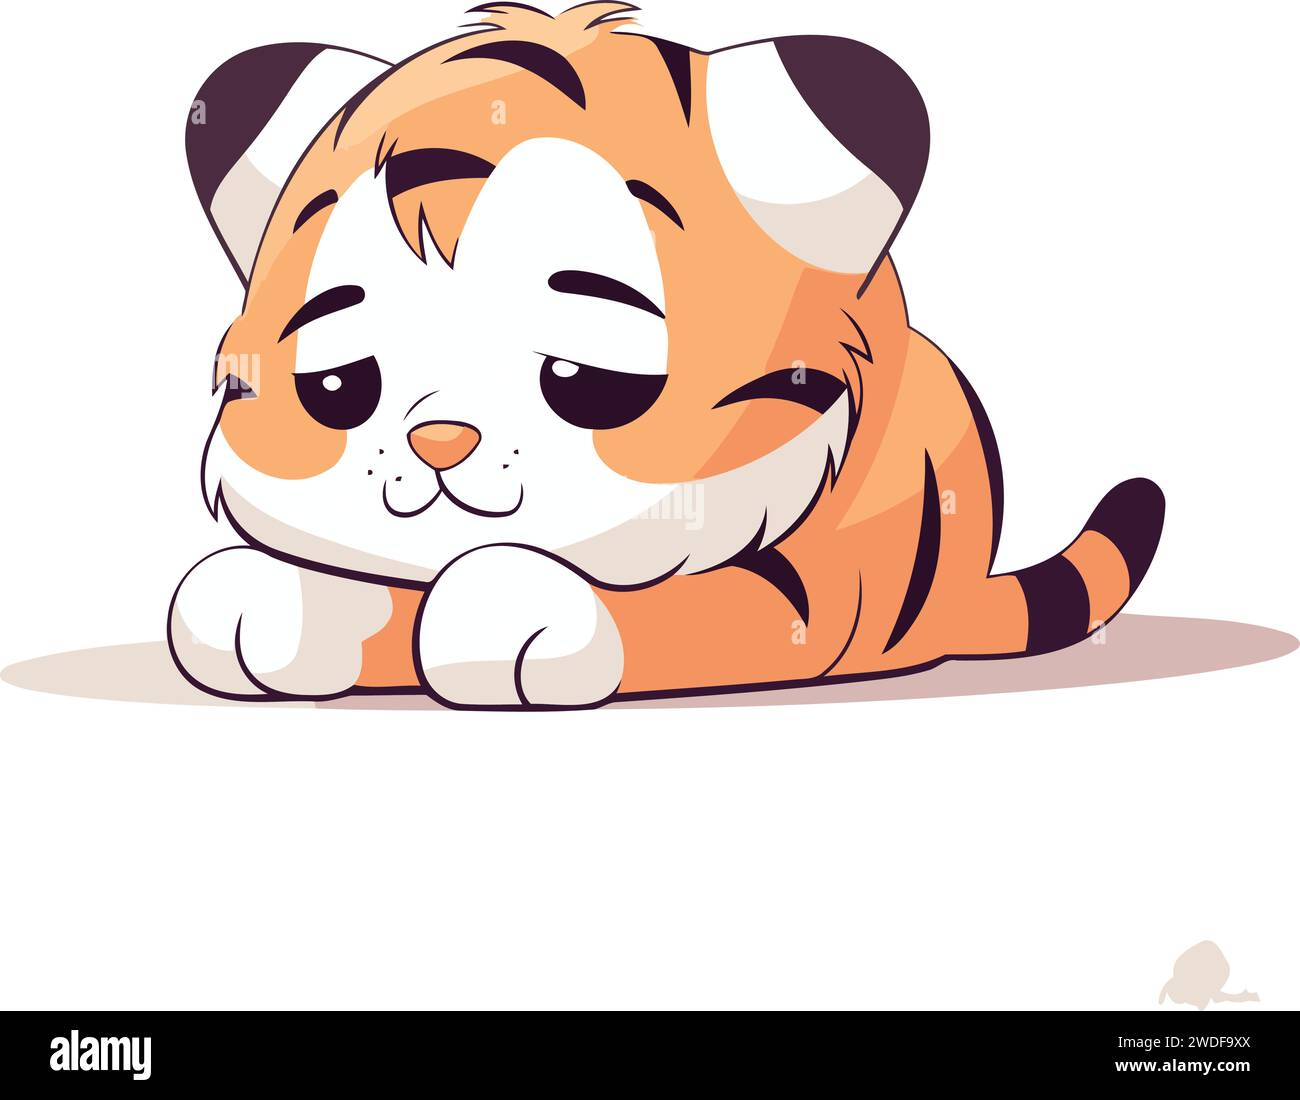 Mignon petit tigre couché. Illustration vectorielle dans le style de bande dessinée. Illustration de Vecteur